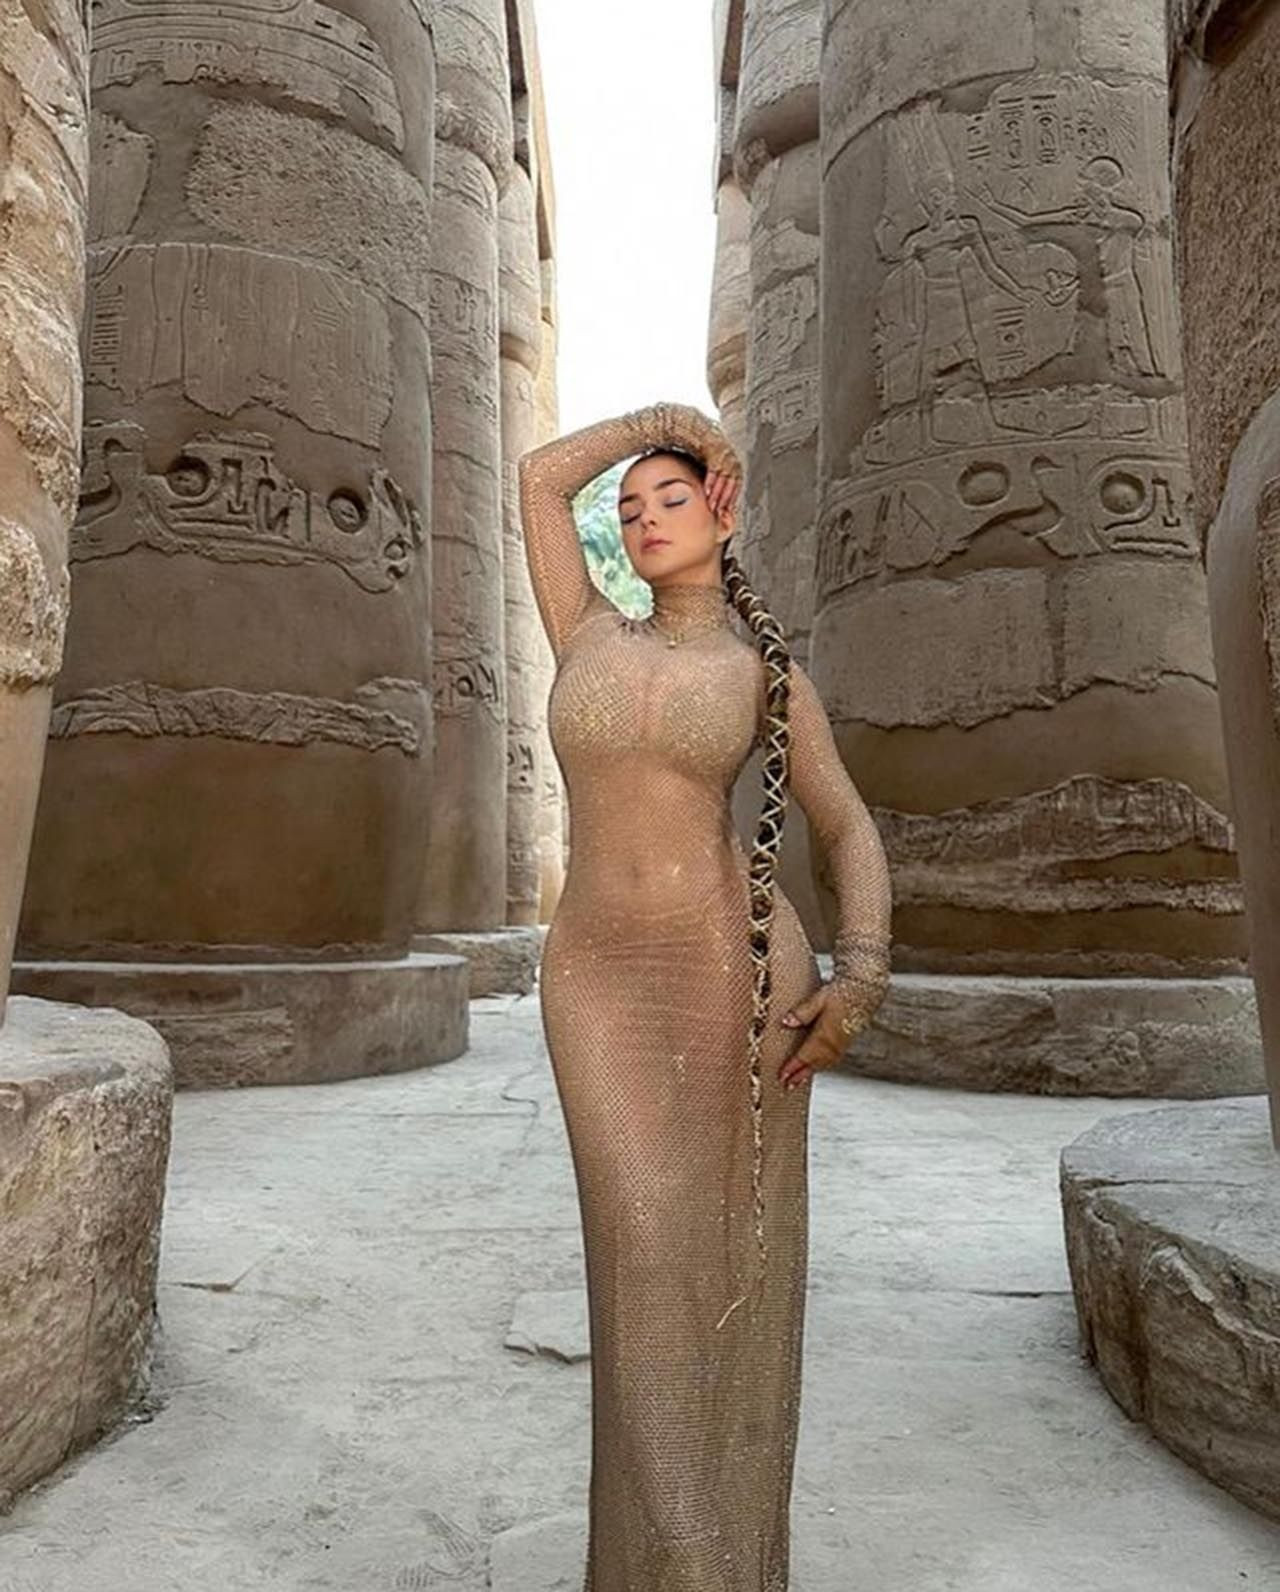 Ünlü model Demi Rose'un cesur pozları Mısır'ı ayağa kaldırdı - Resim: 1